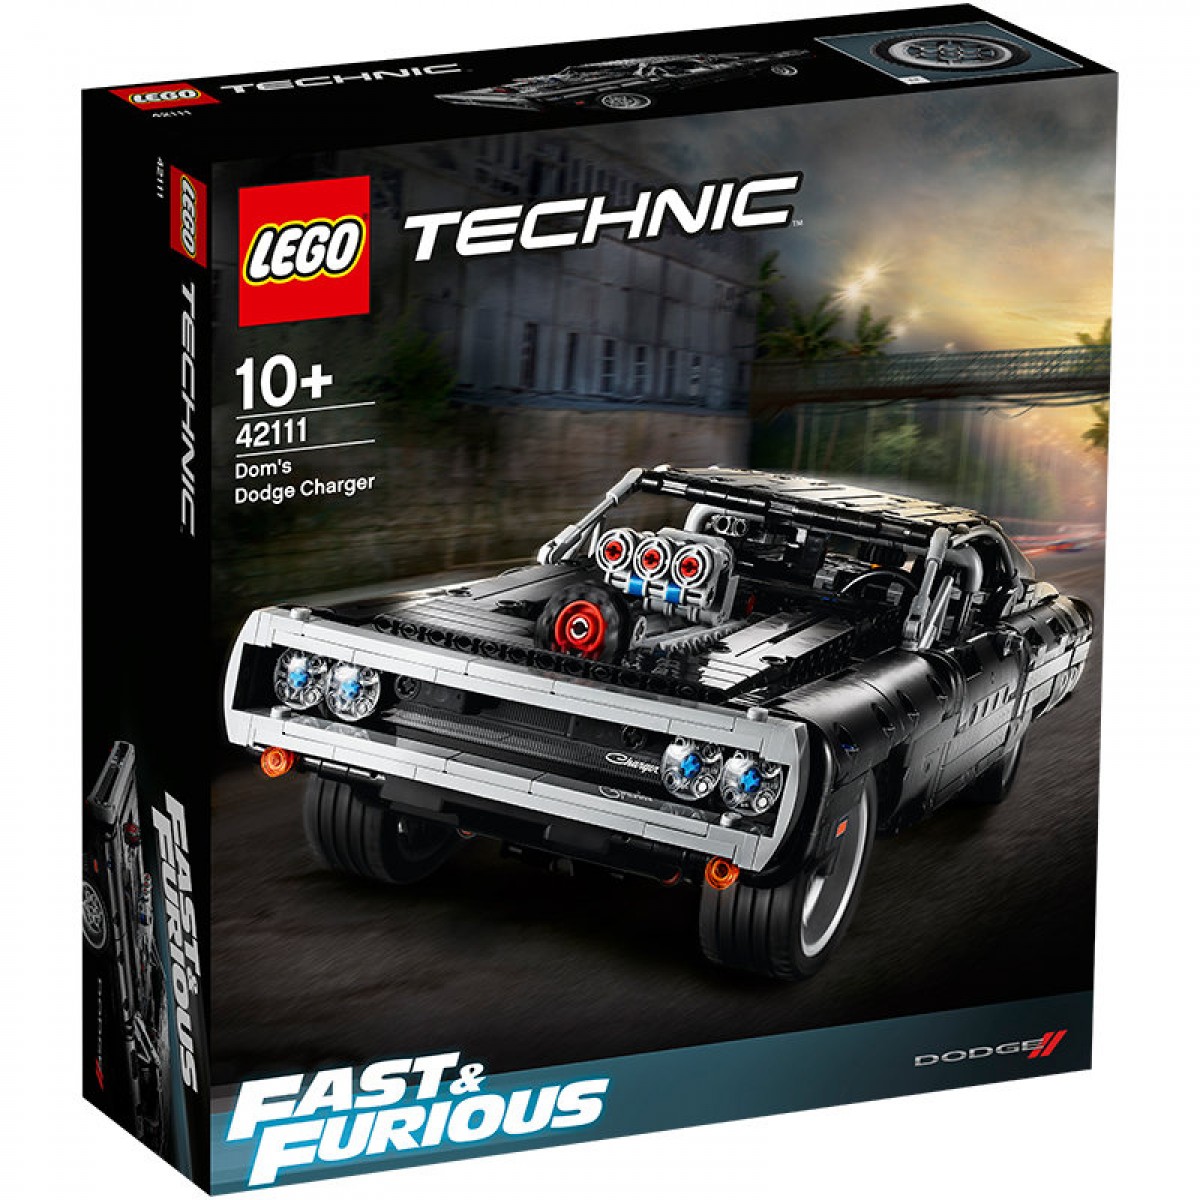 【速度與激情同款】LEGO樂高機械組系列 道奇Charger跑車模型42111